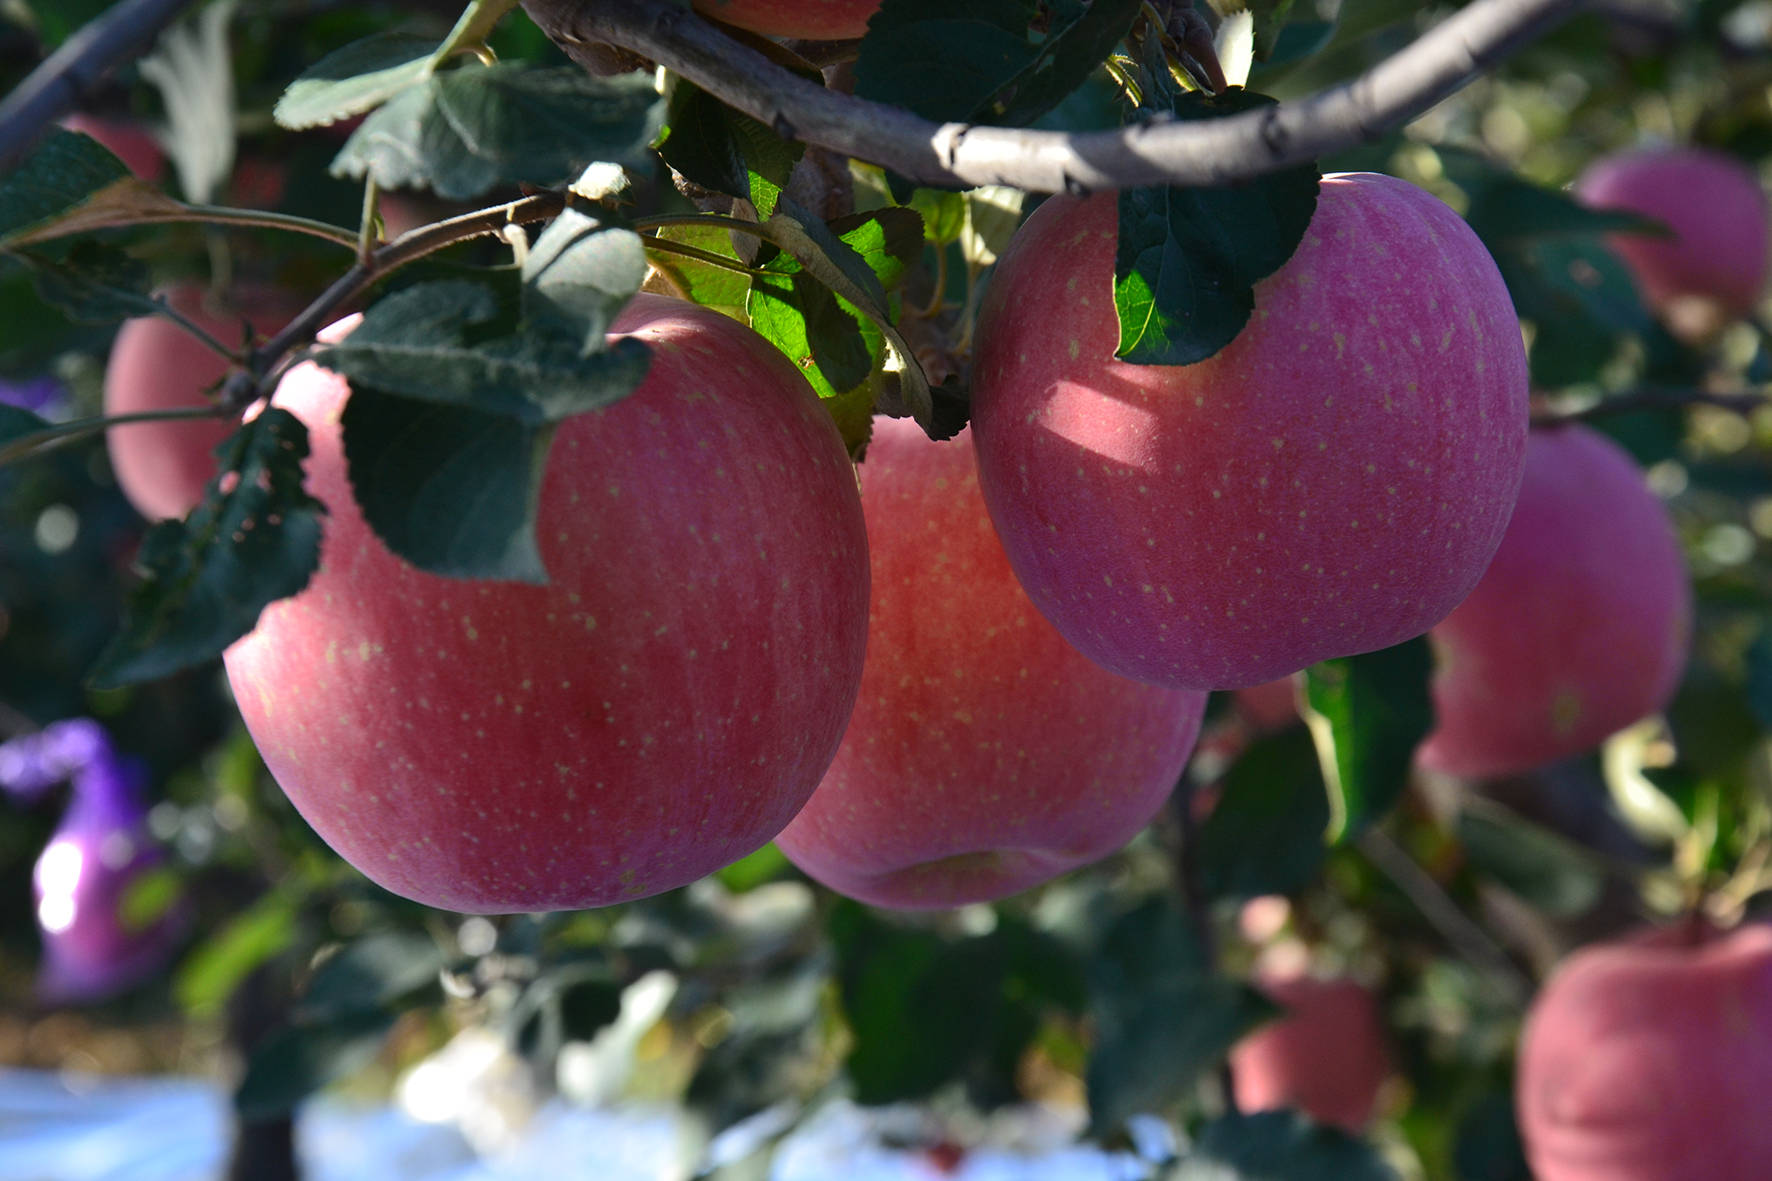 苹果种植,用什么肥料膨大果个效果好?抓住两个重点时间很重要